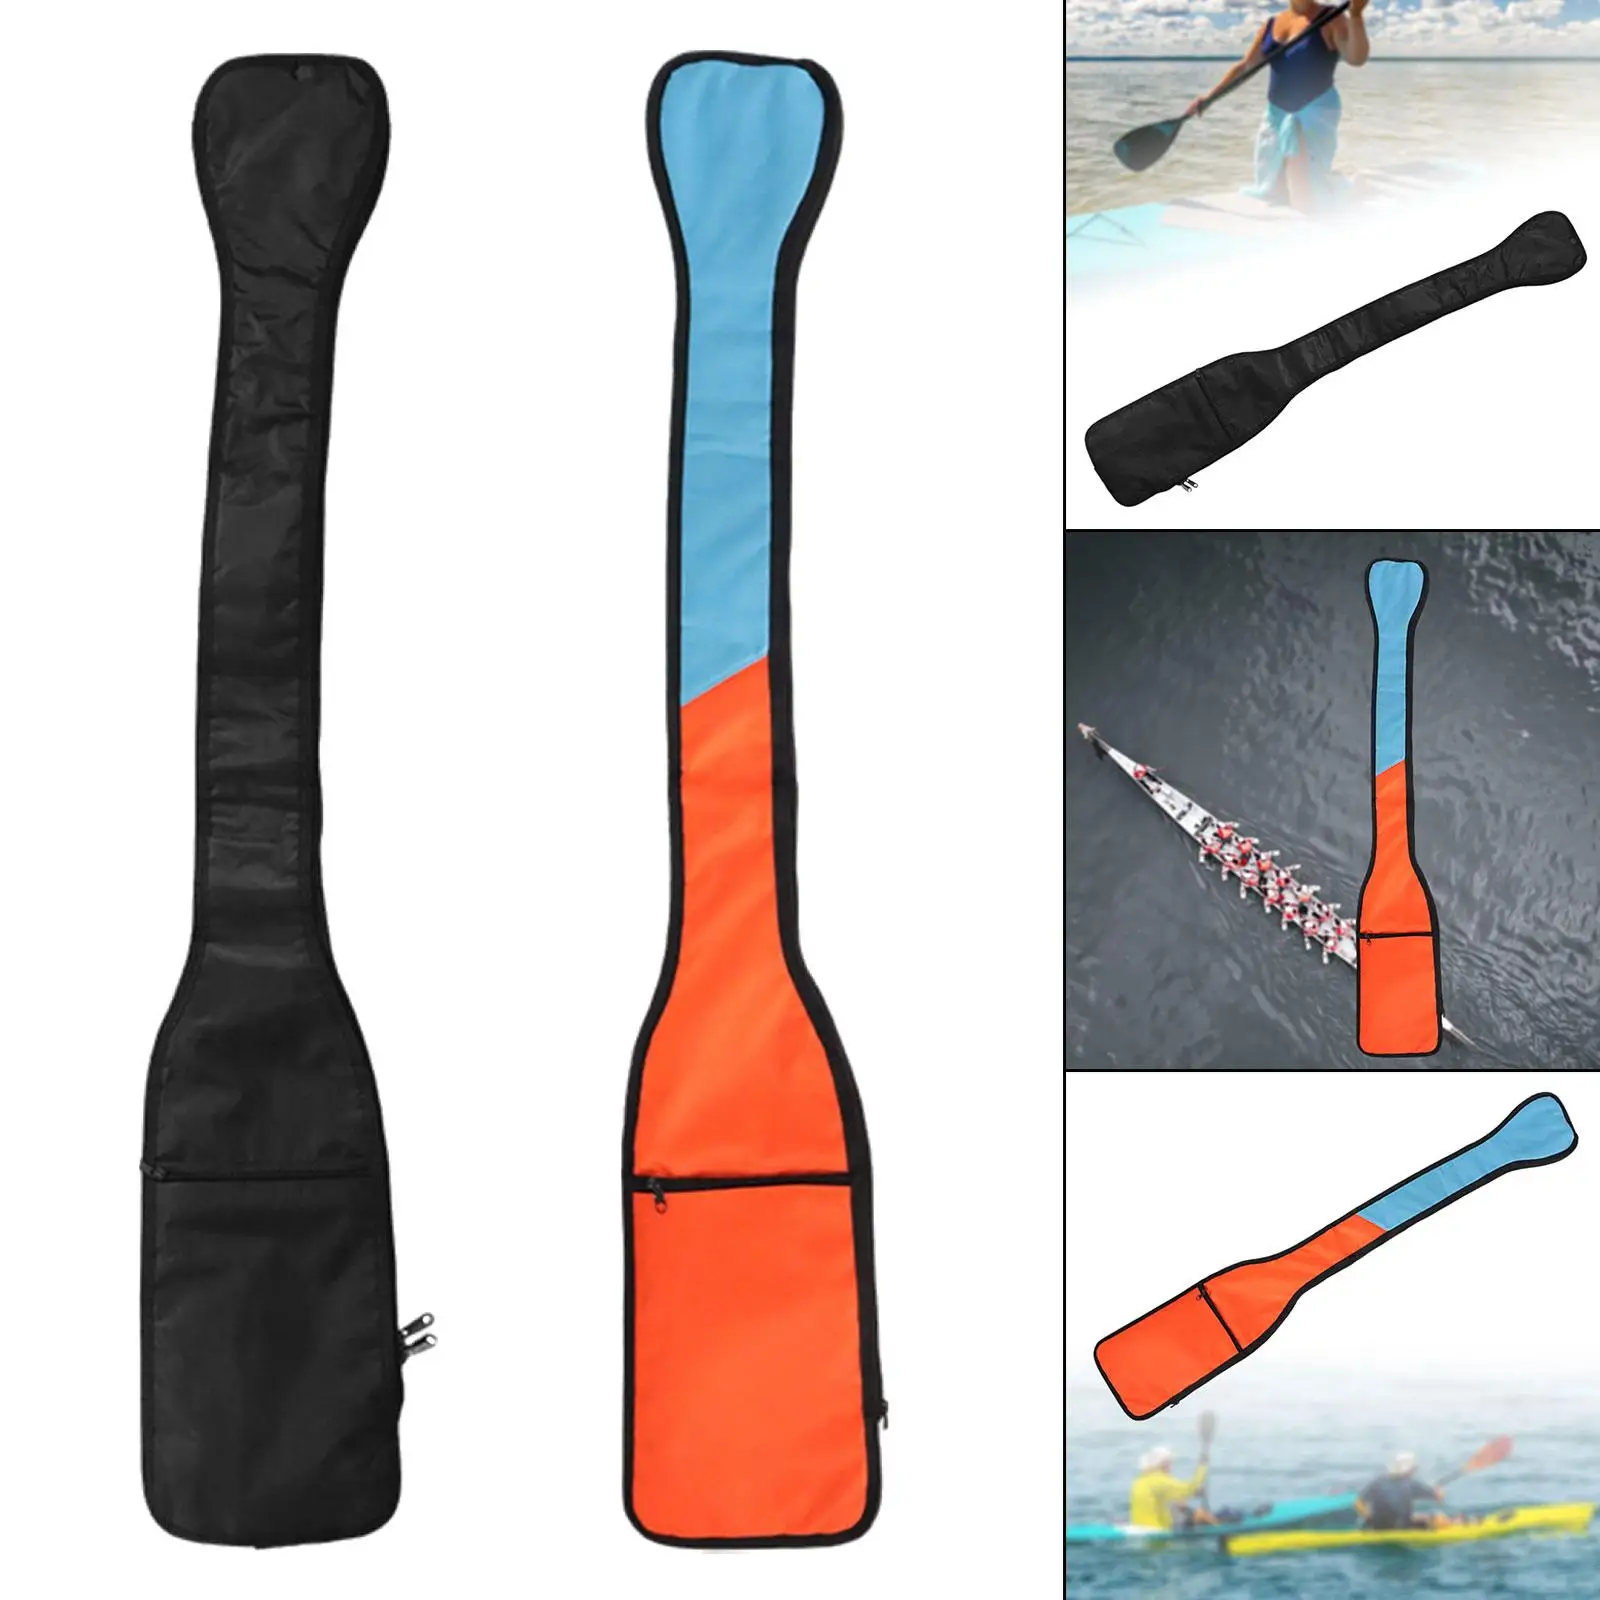 Kayak Paddle Bag, Dragon Boat Paddle Bag, Adjustable Shoulder Strap Carrying